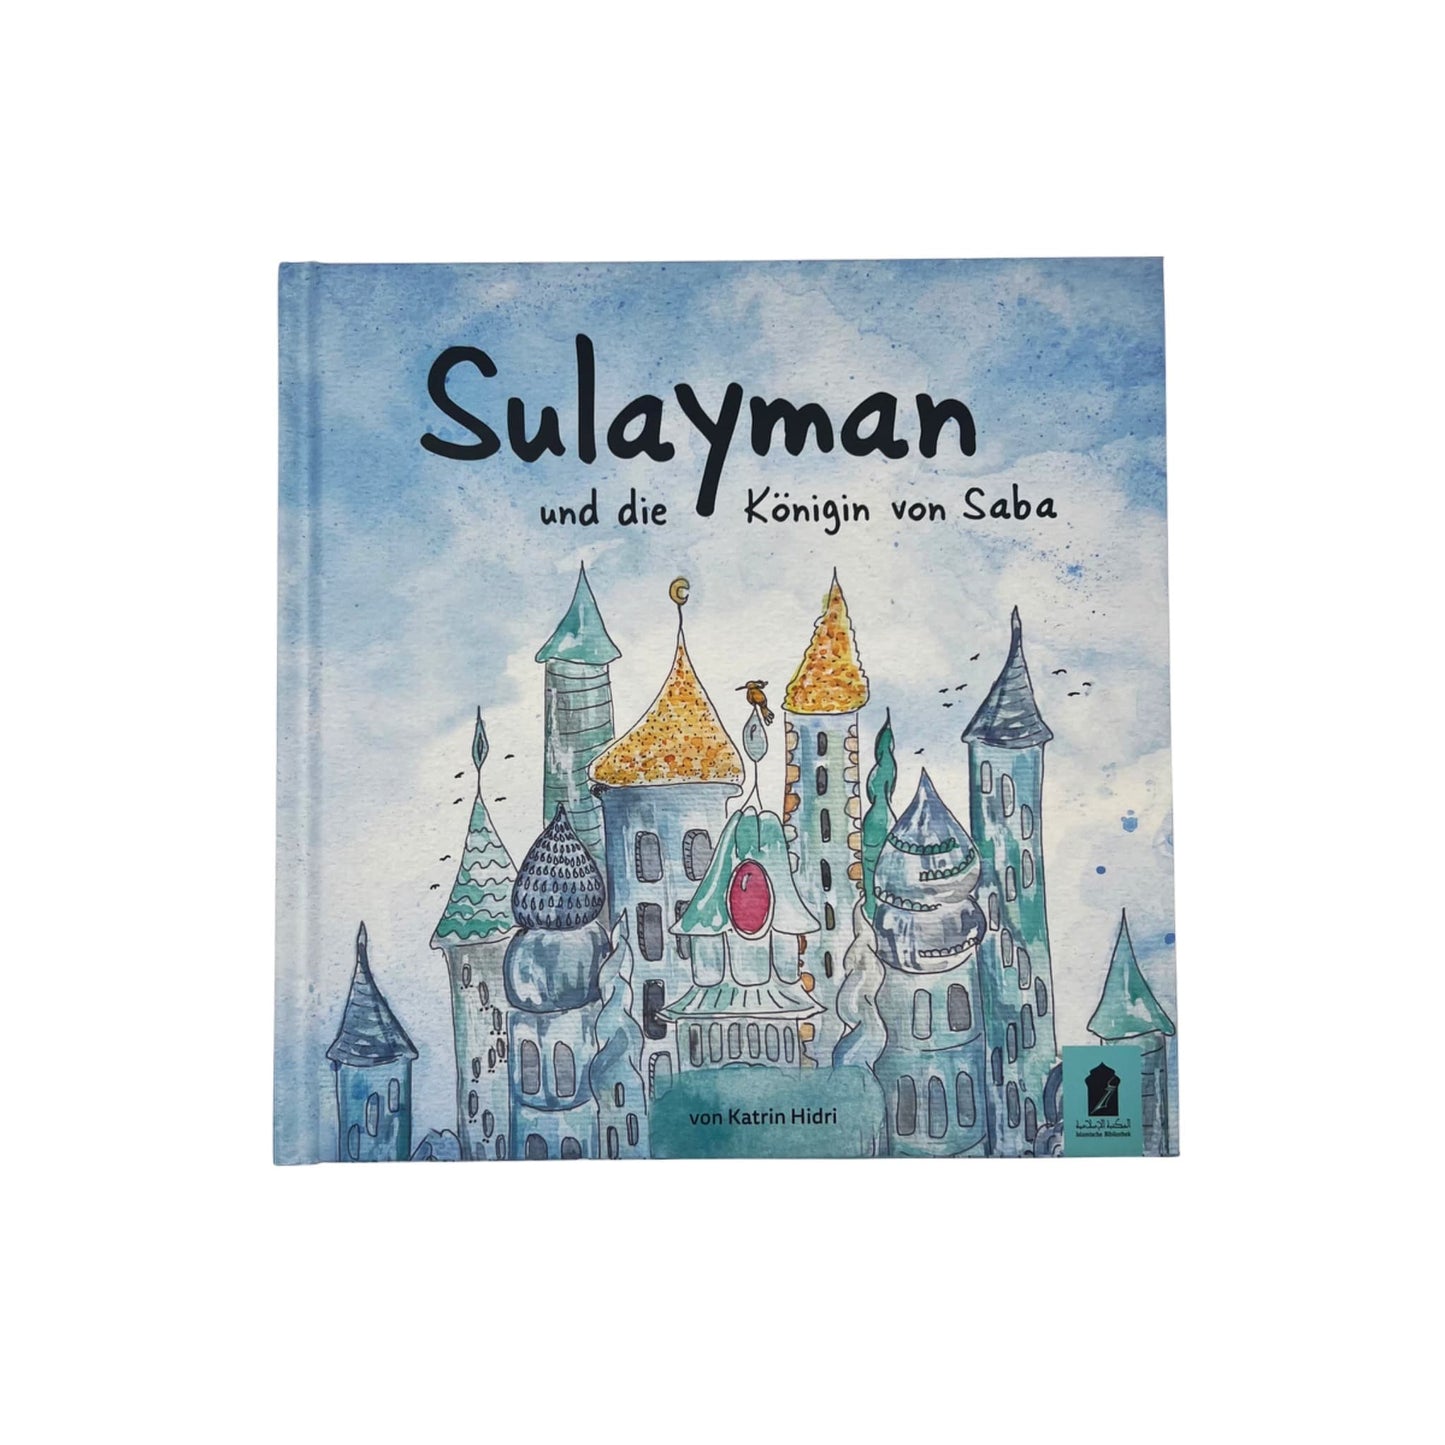 Sulayman und die Könige von Saba